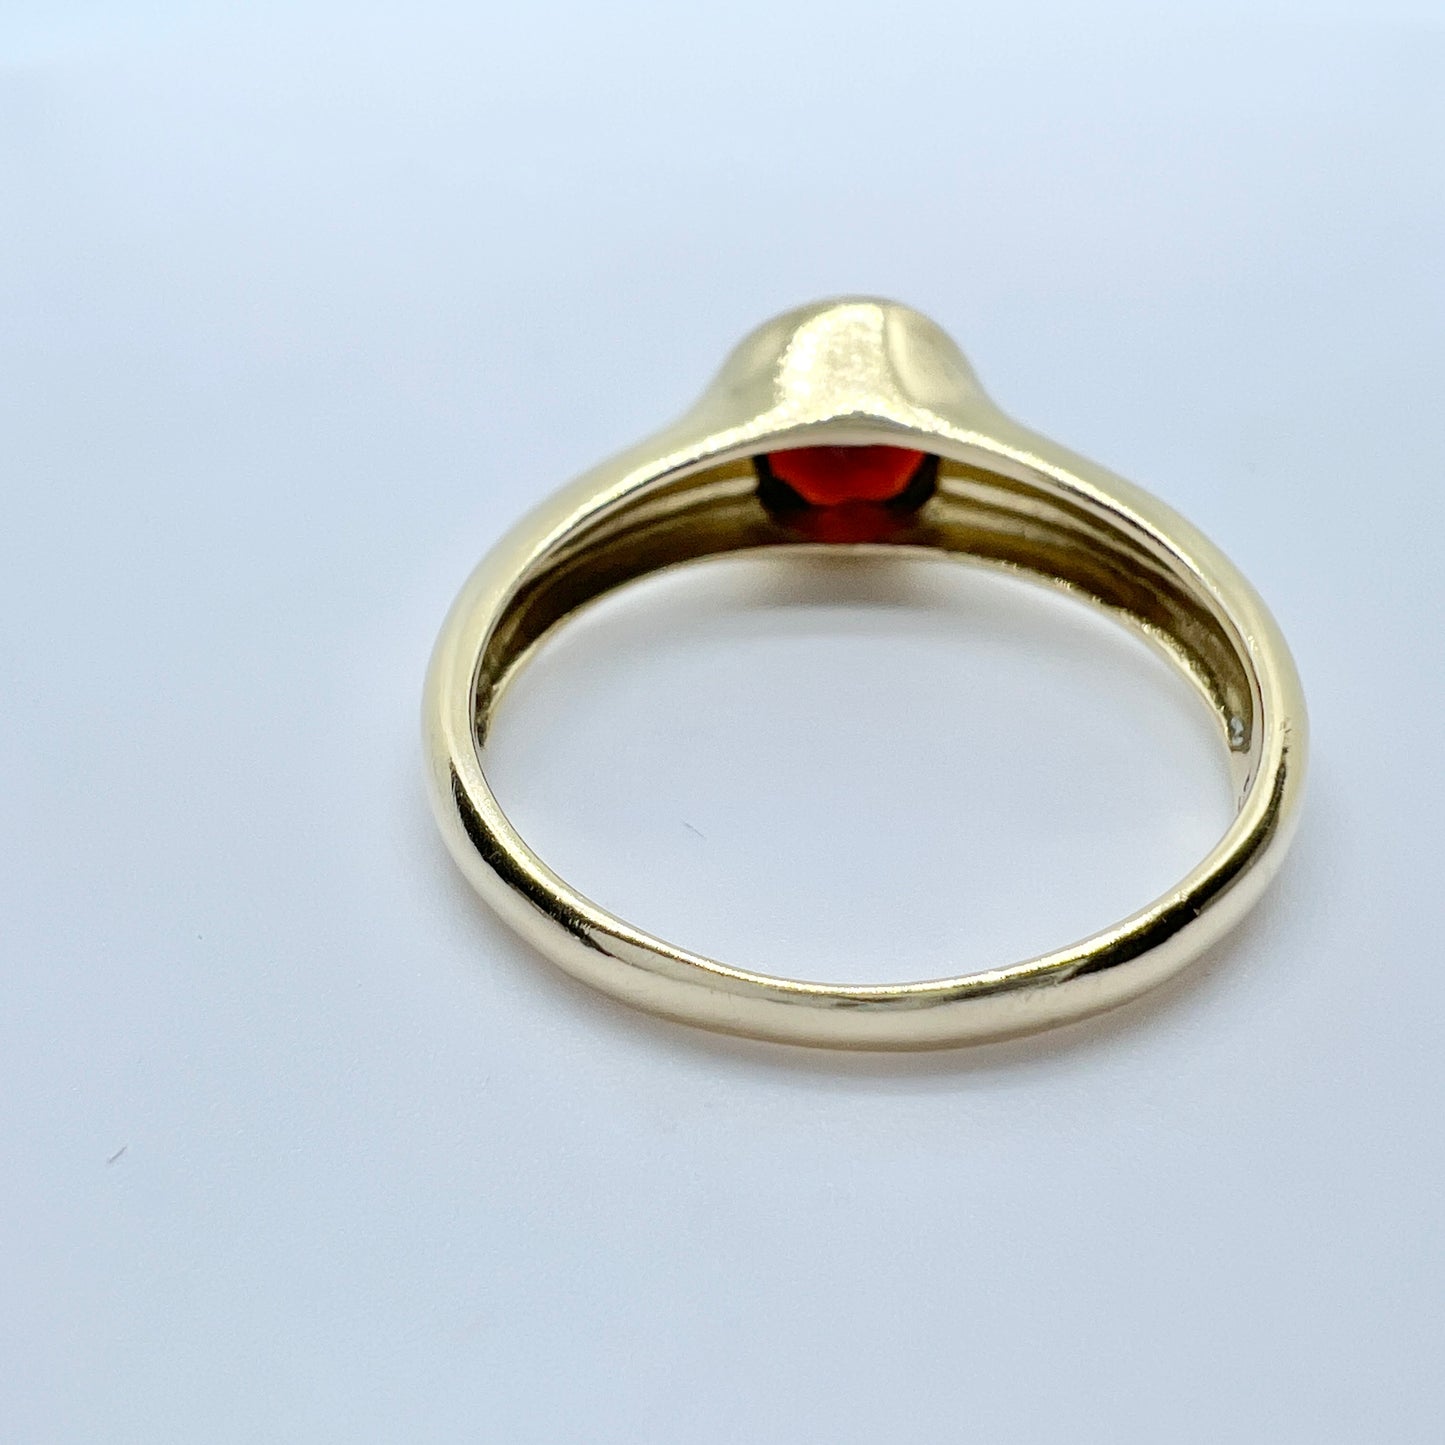 Vintage 14k Gold Garnet Ring. Makers Mark.